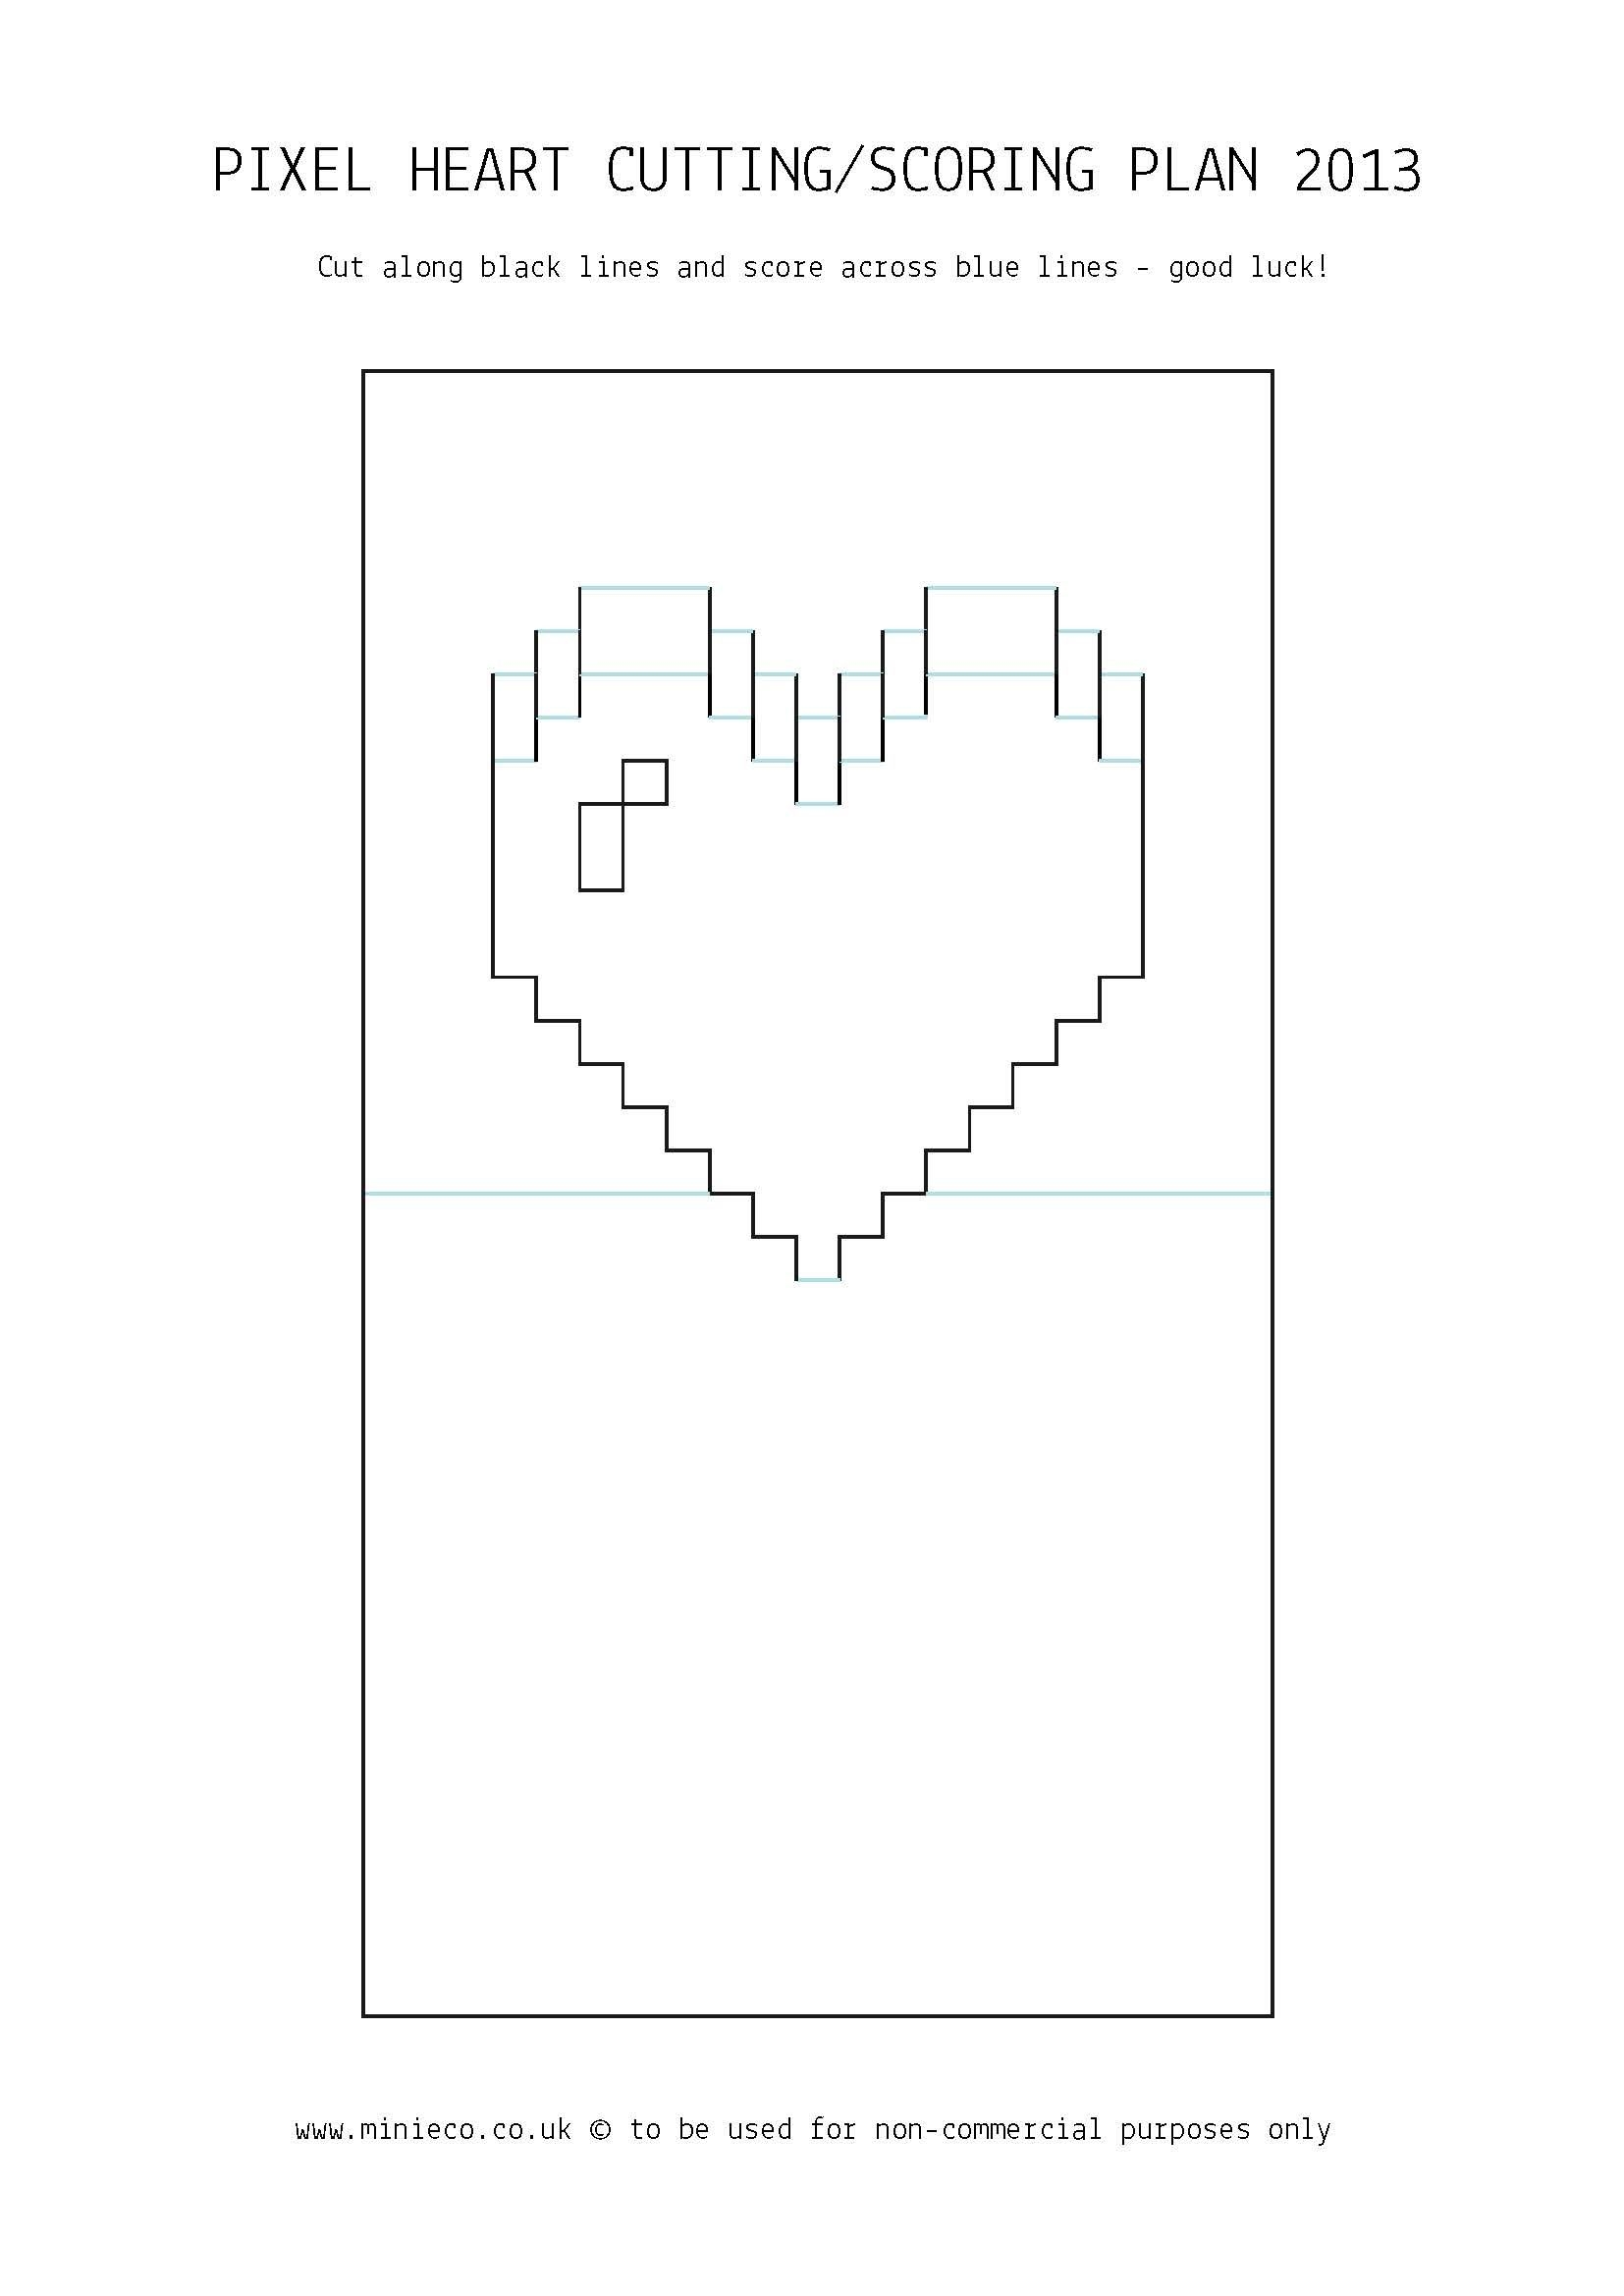 Pixel Heart Pop Up Card Pop Up Card Templates Pixel Heart Heart Pop Up Card